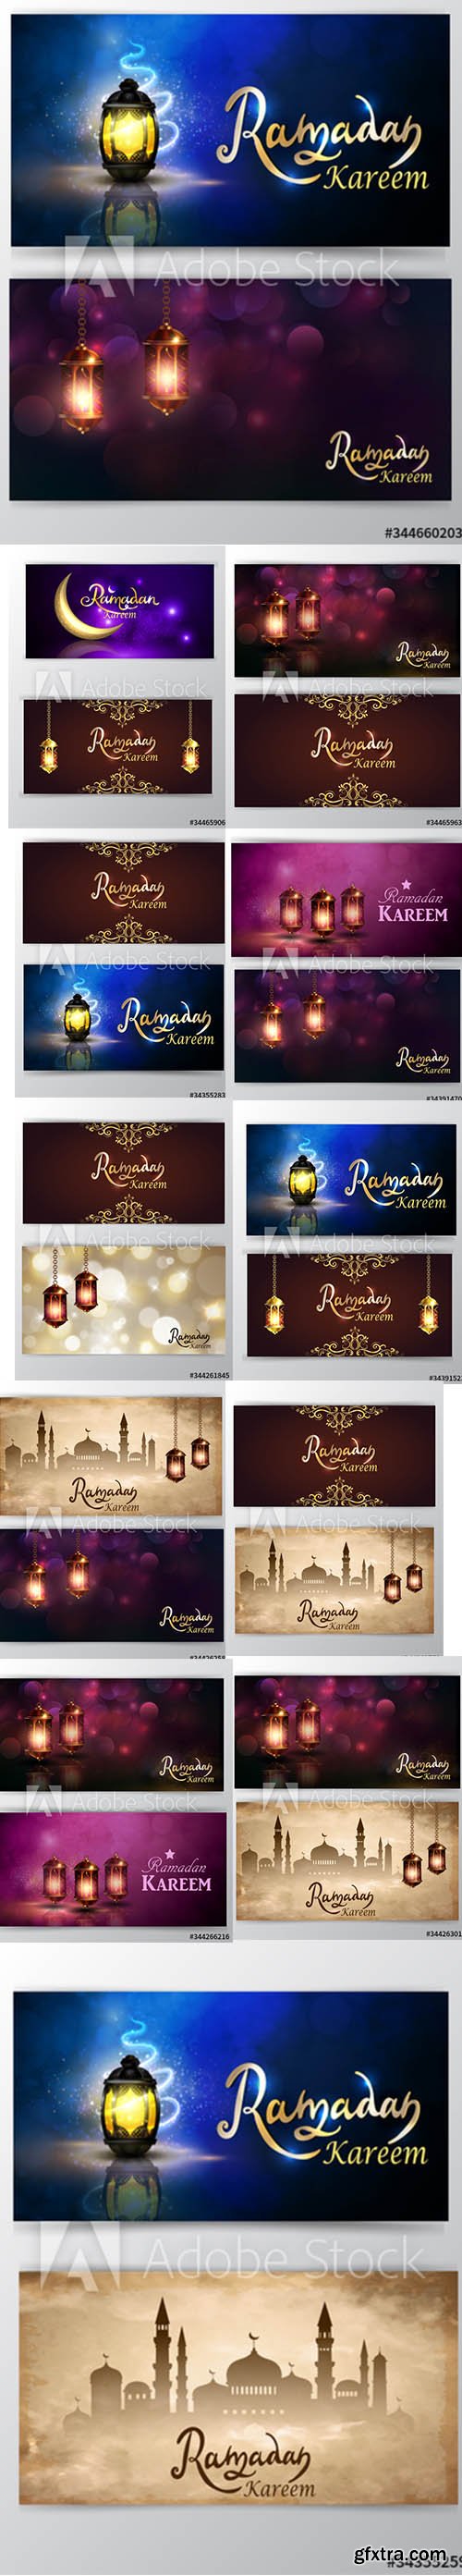 Ramadan Kareem greeting background set of cards